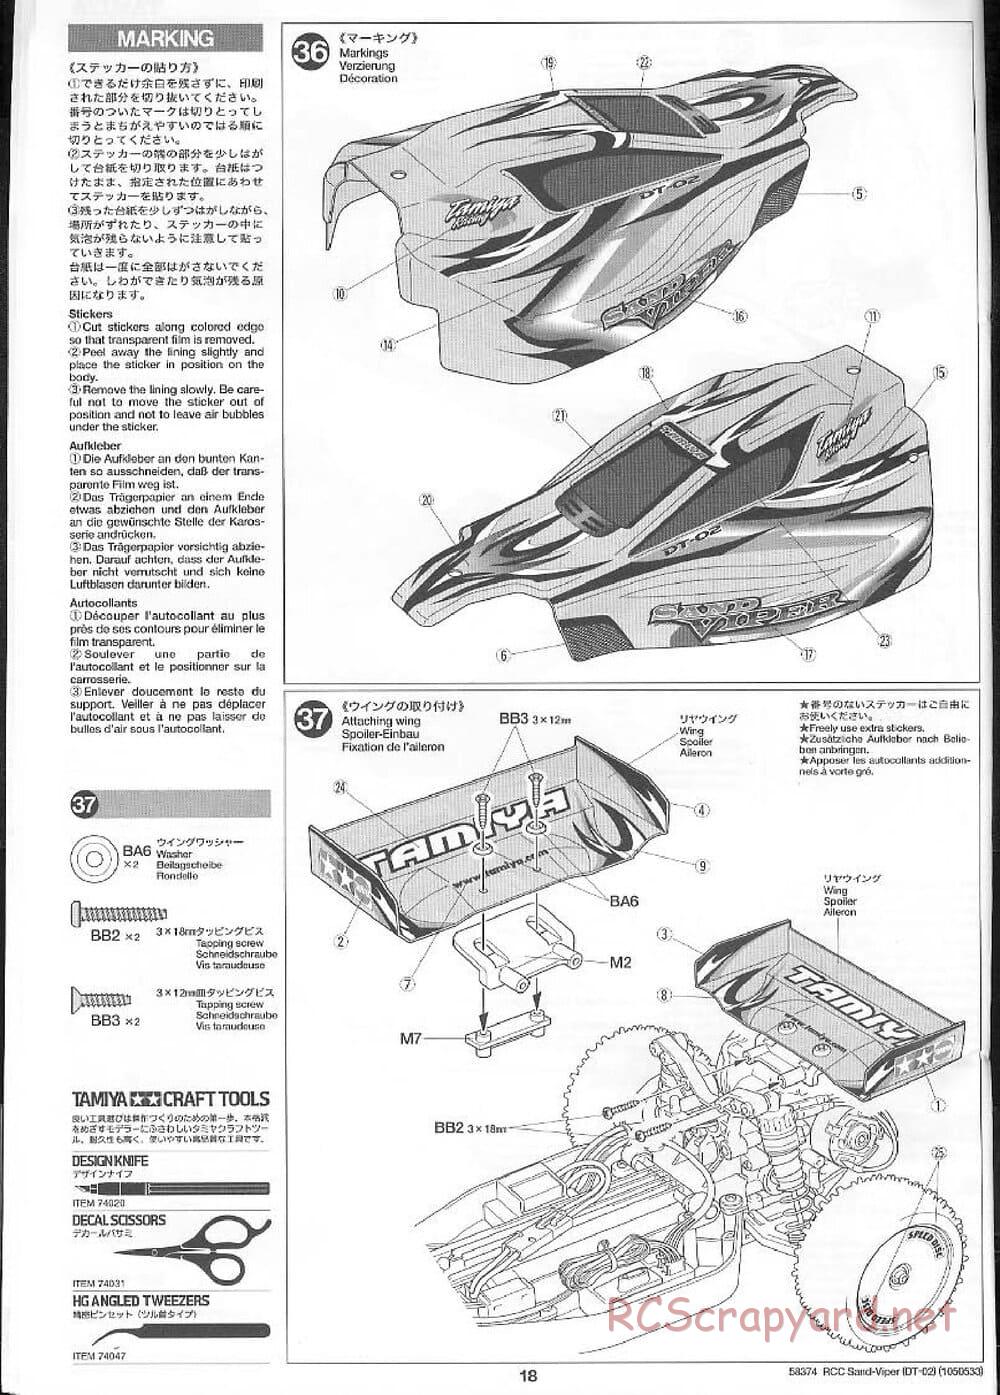 Tamiya - Sand Viper Chassis - Manual - Page 18